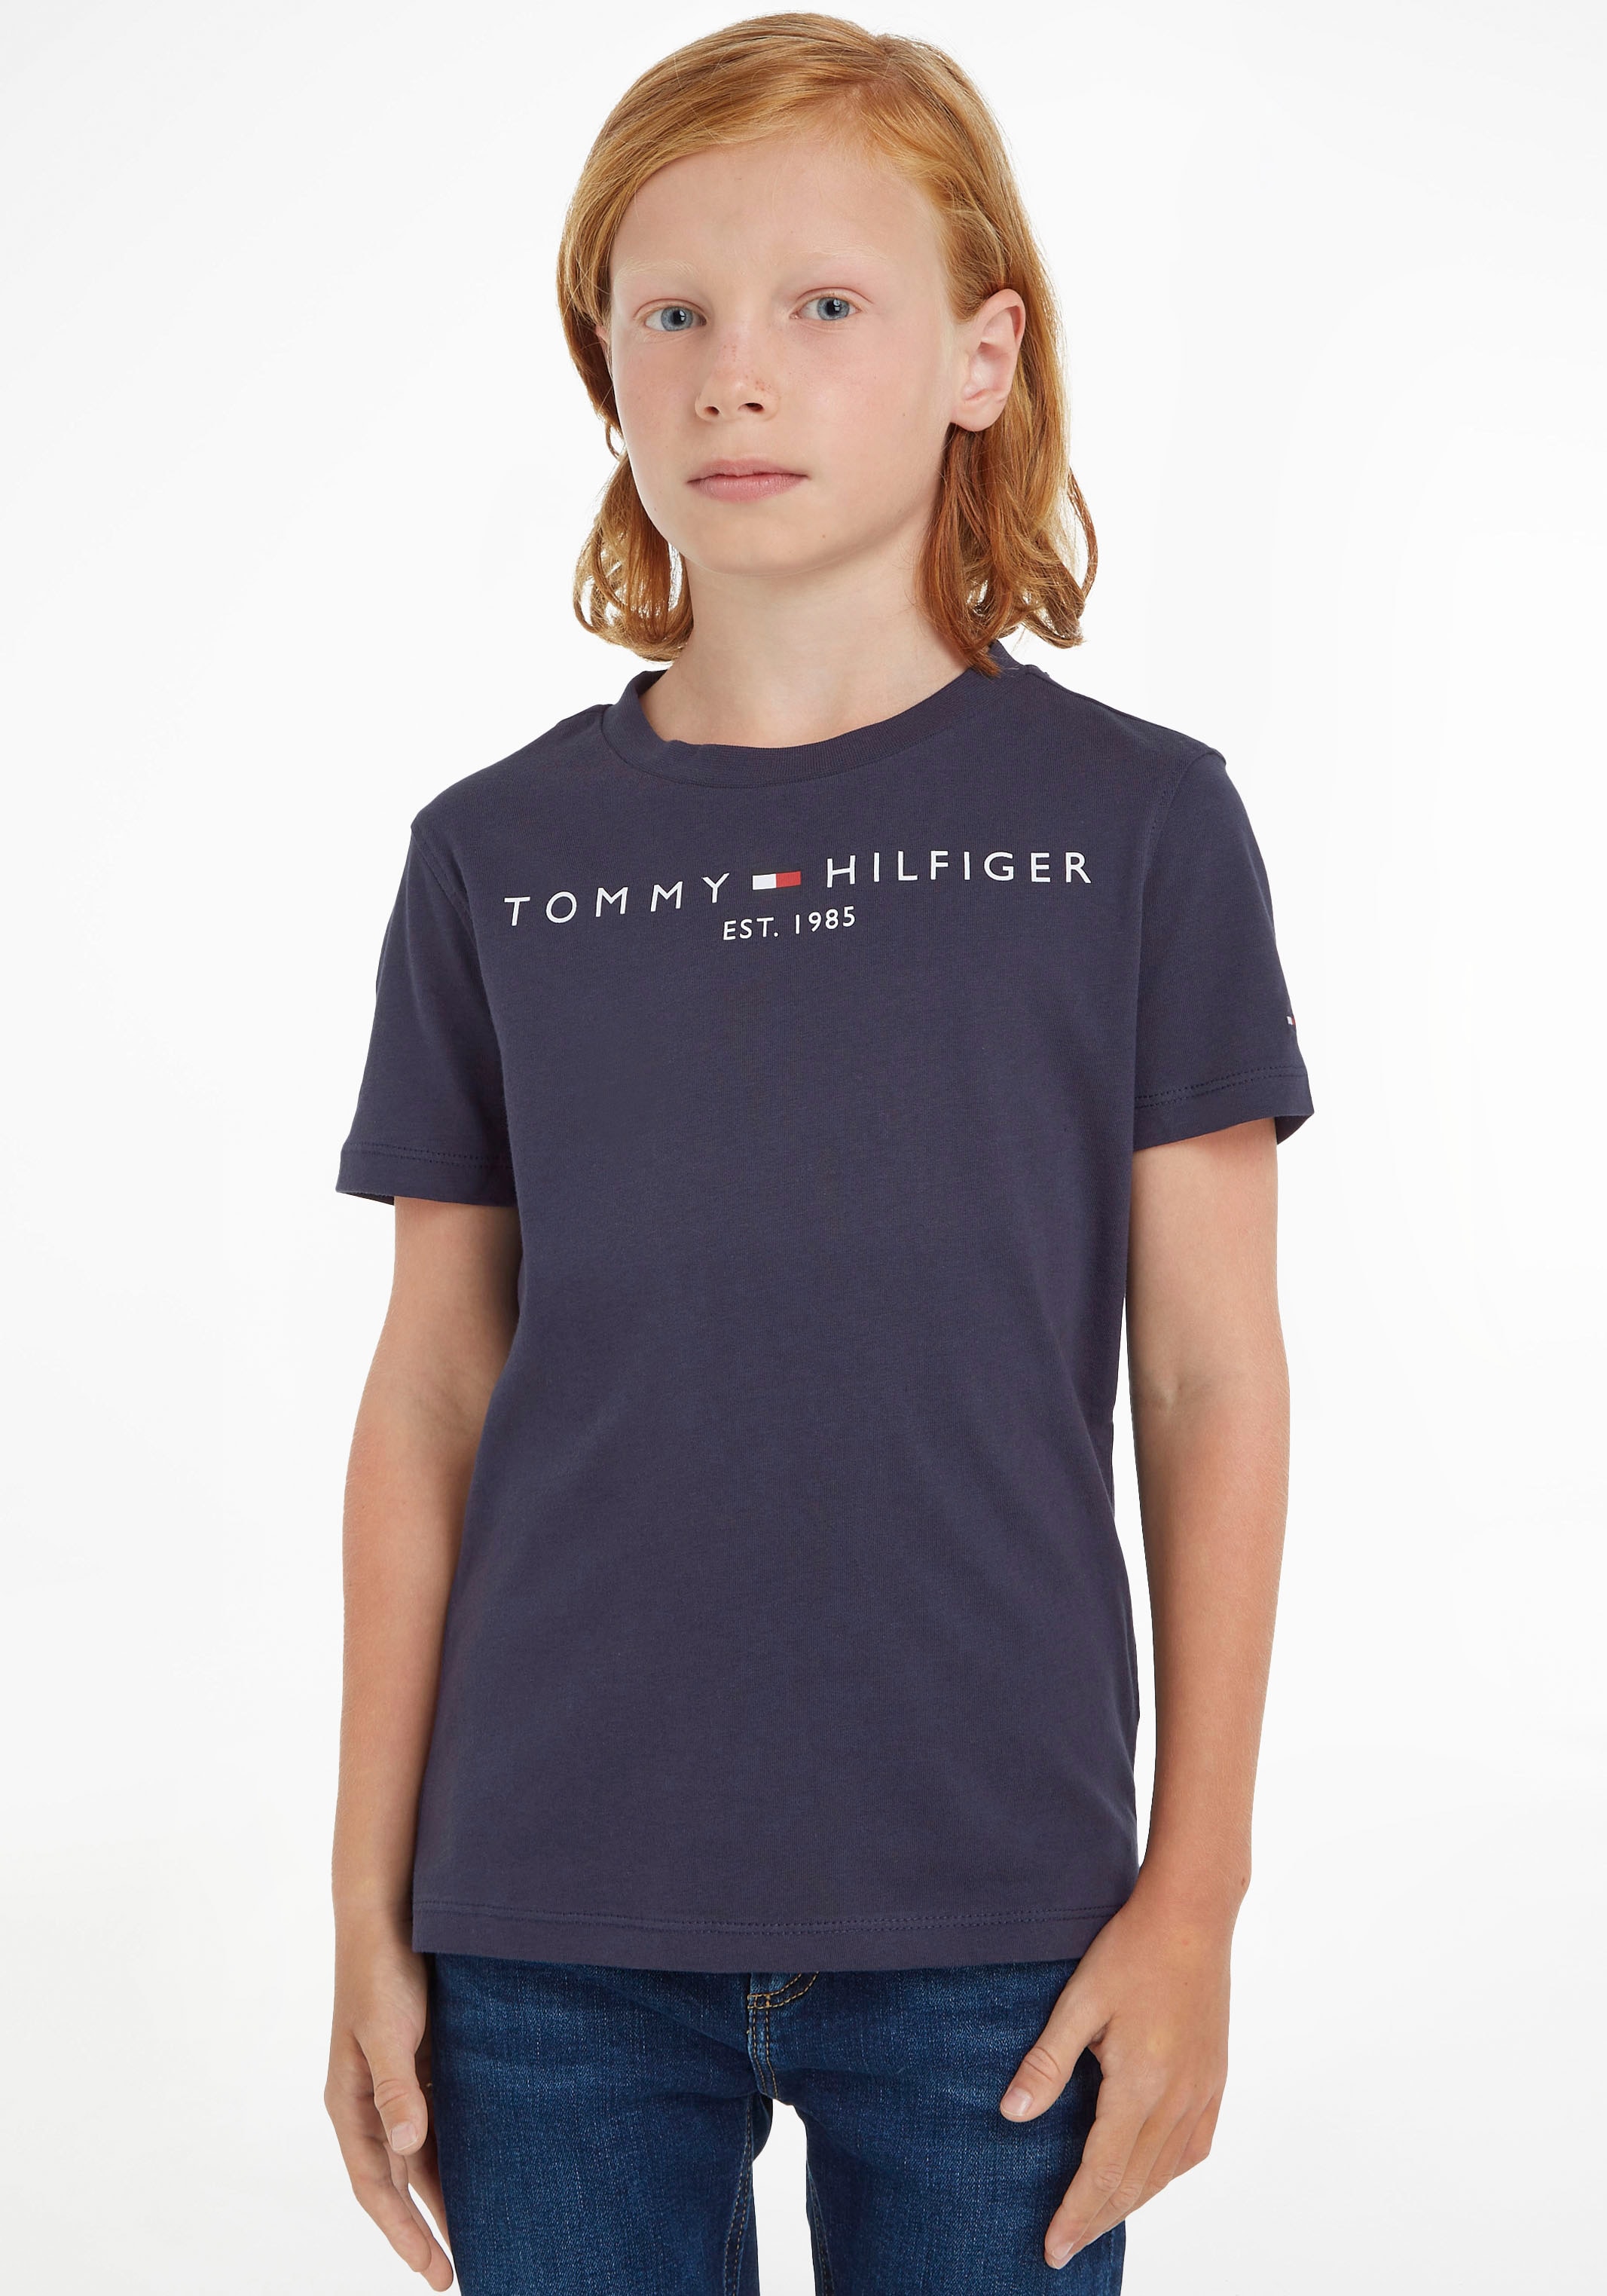 TOMMY HILFIGER Marškinėliai »ESSENTIAL TEE« dėl Junge...